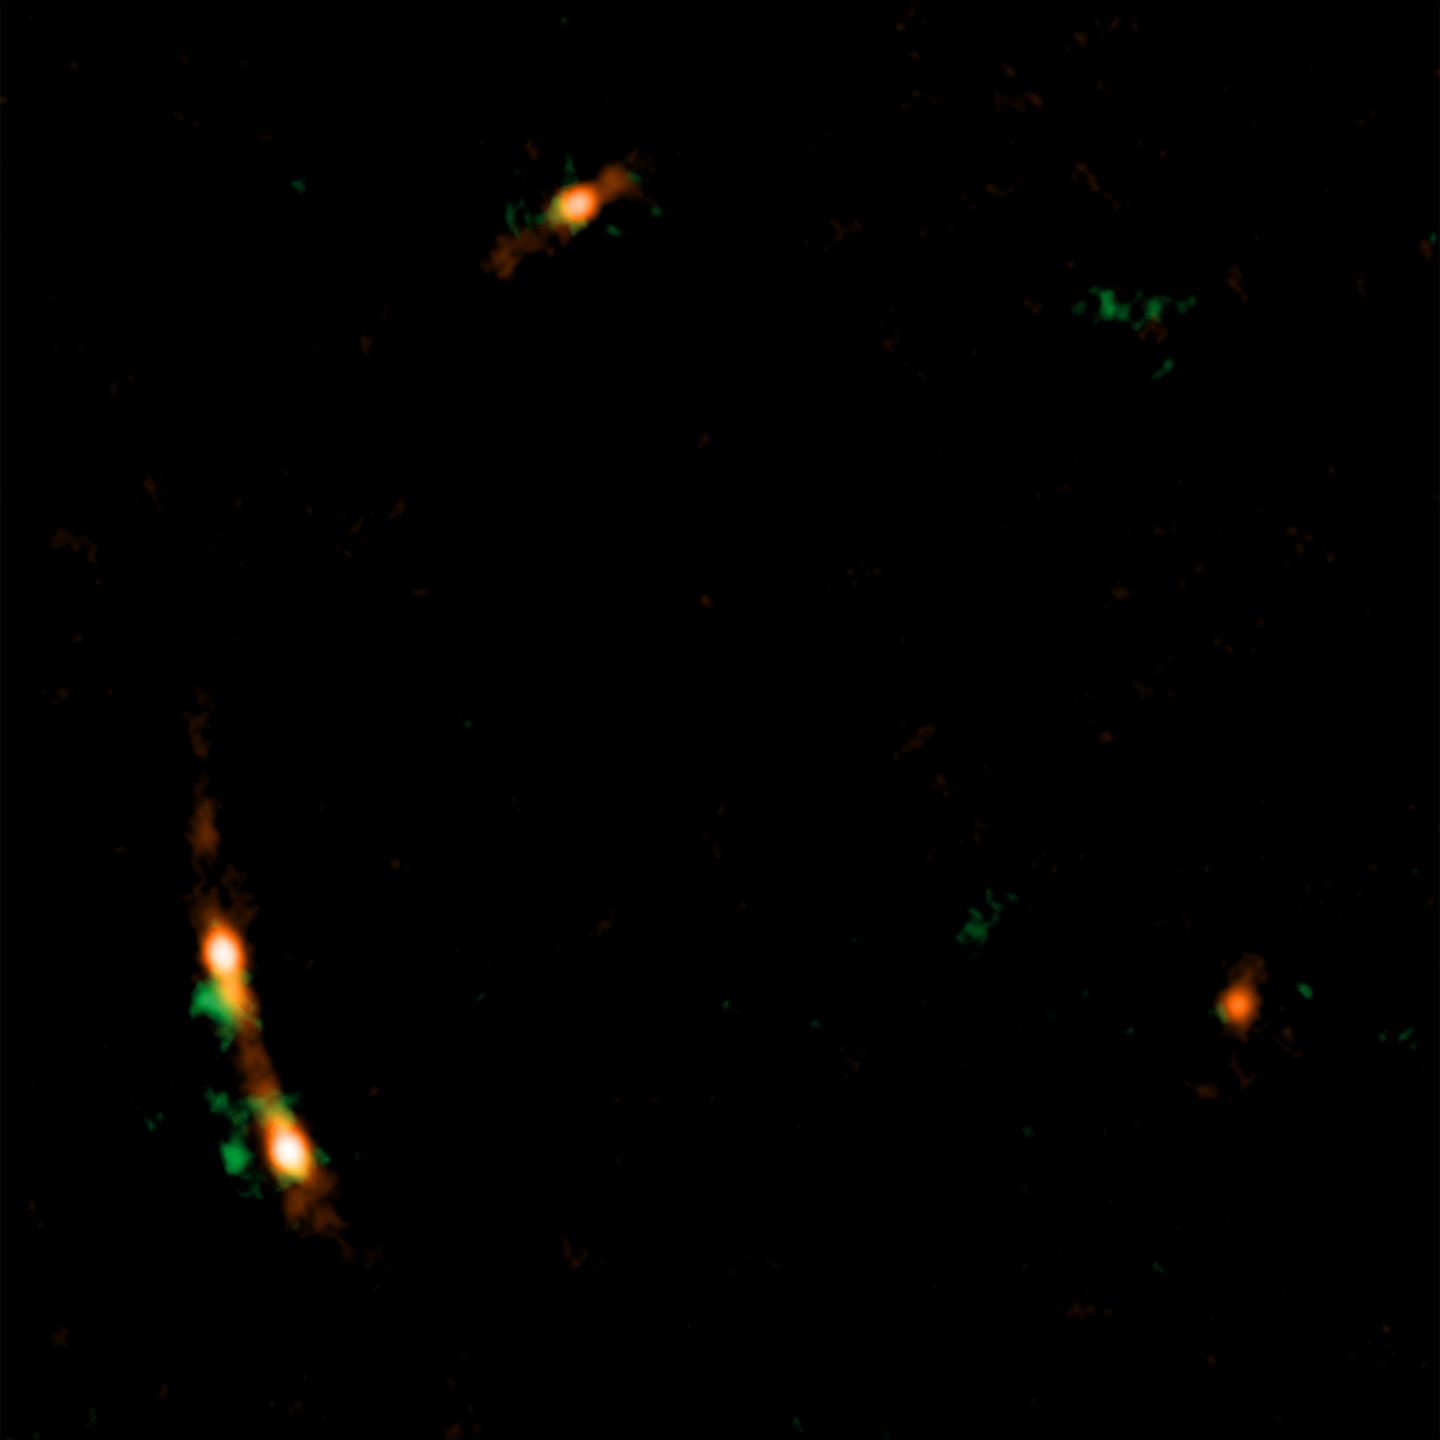 アルマ望遠鏡で観測したクエーサーMG J0414+0534の疑似カラー&#